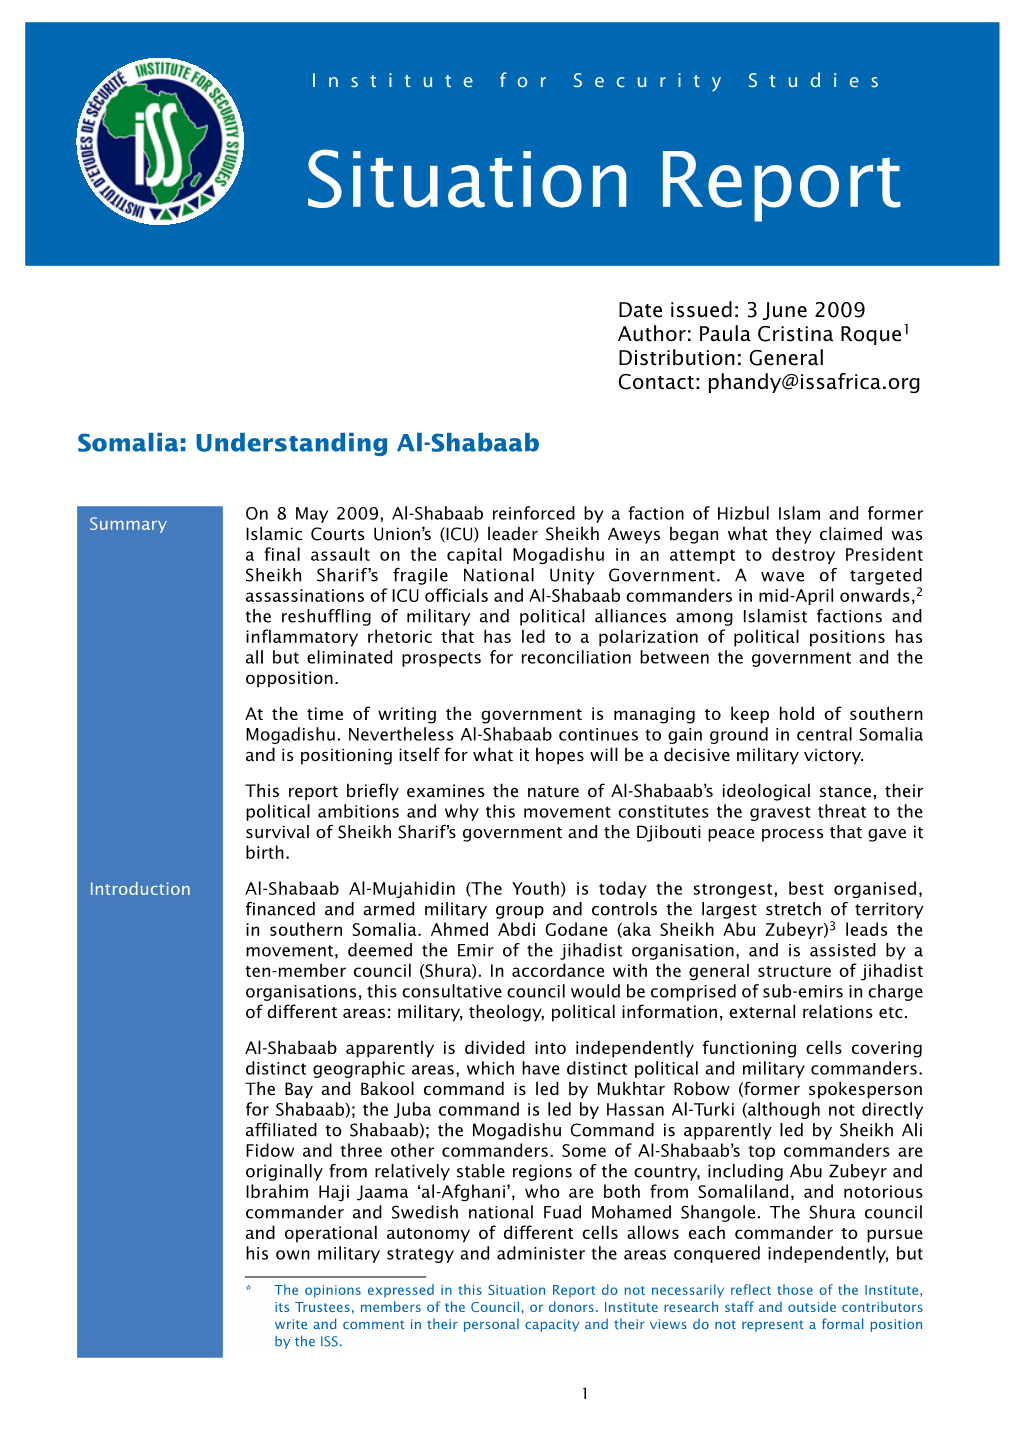 Somalia: Understanding Al-Shabaab